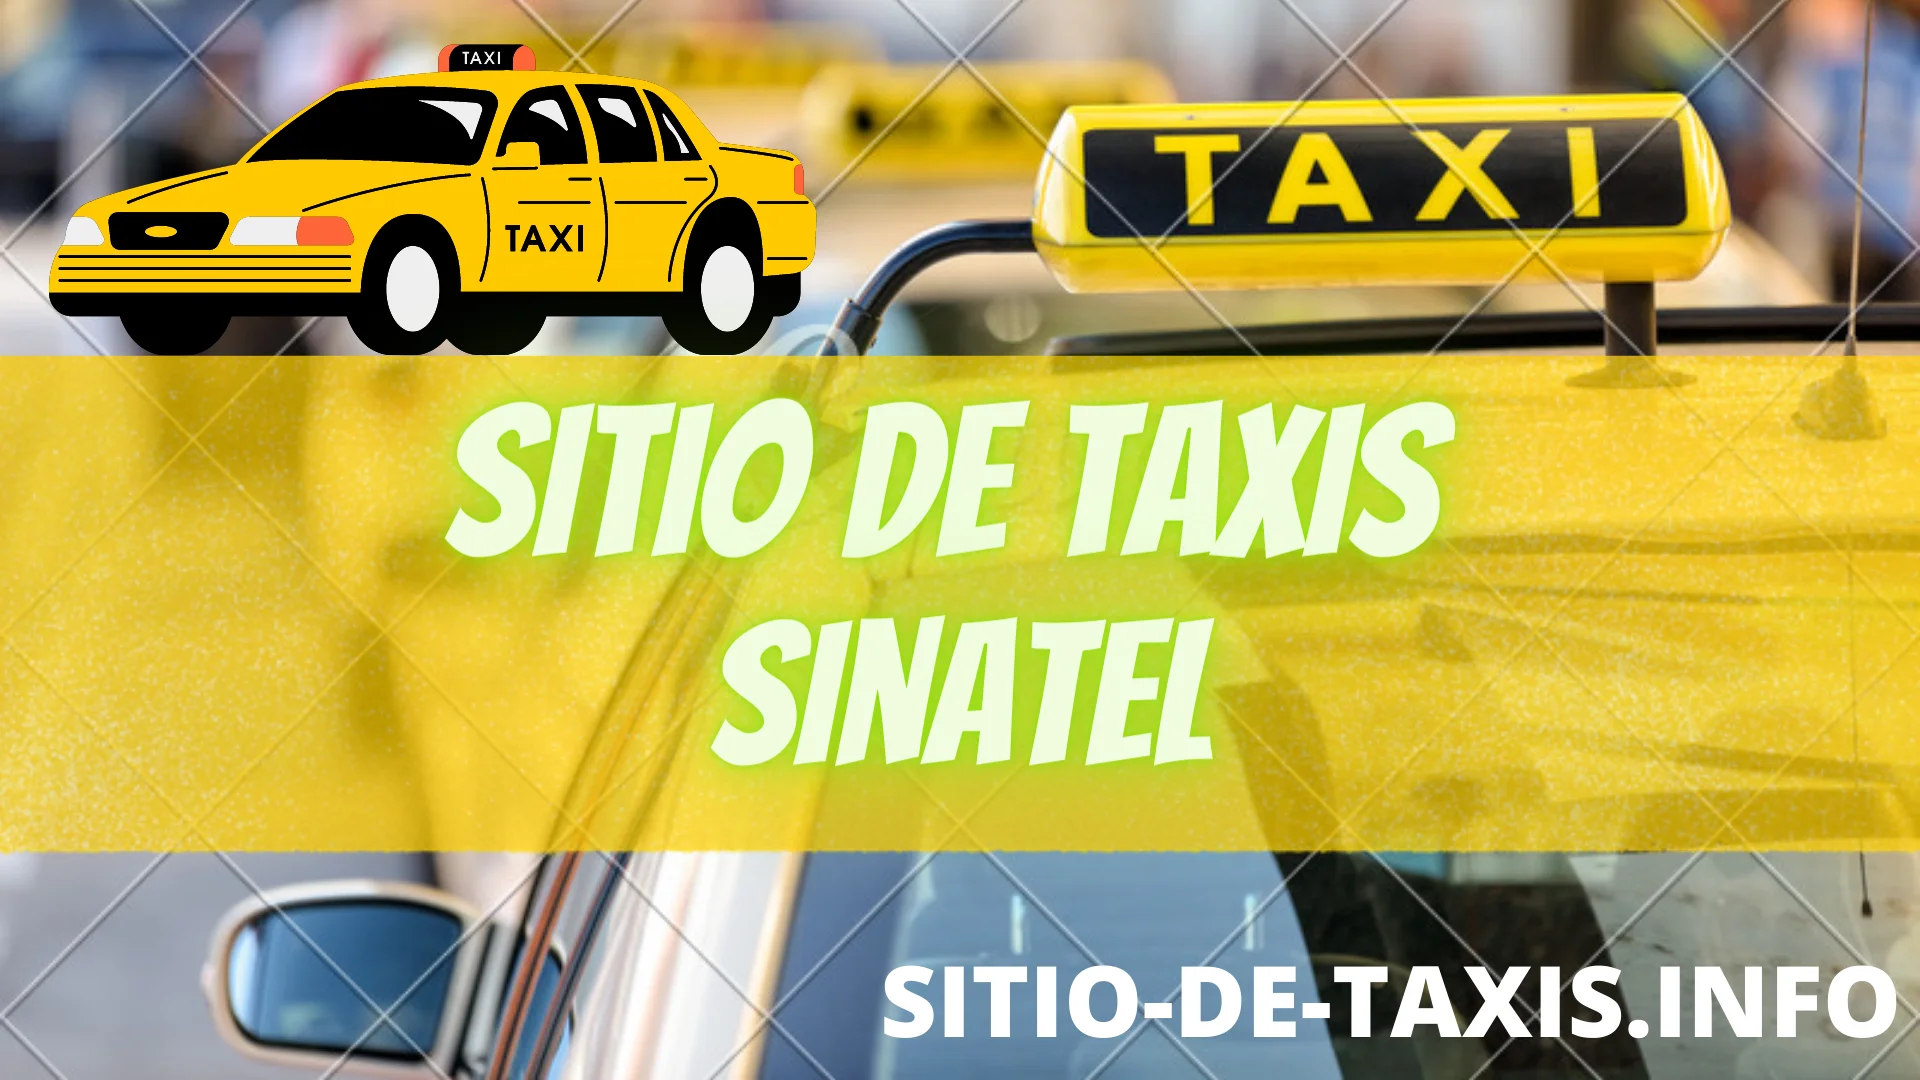 Sitio de Taxis Sinatel